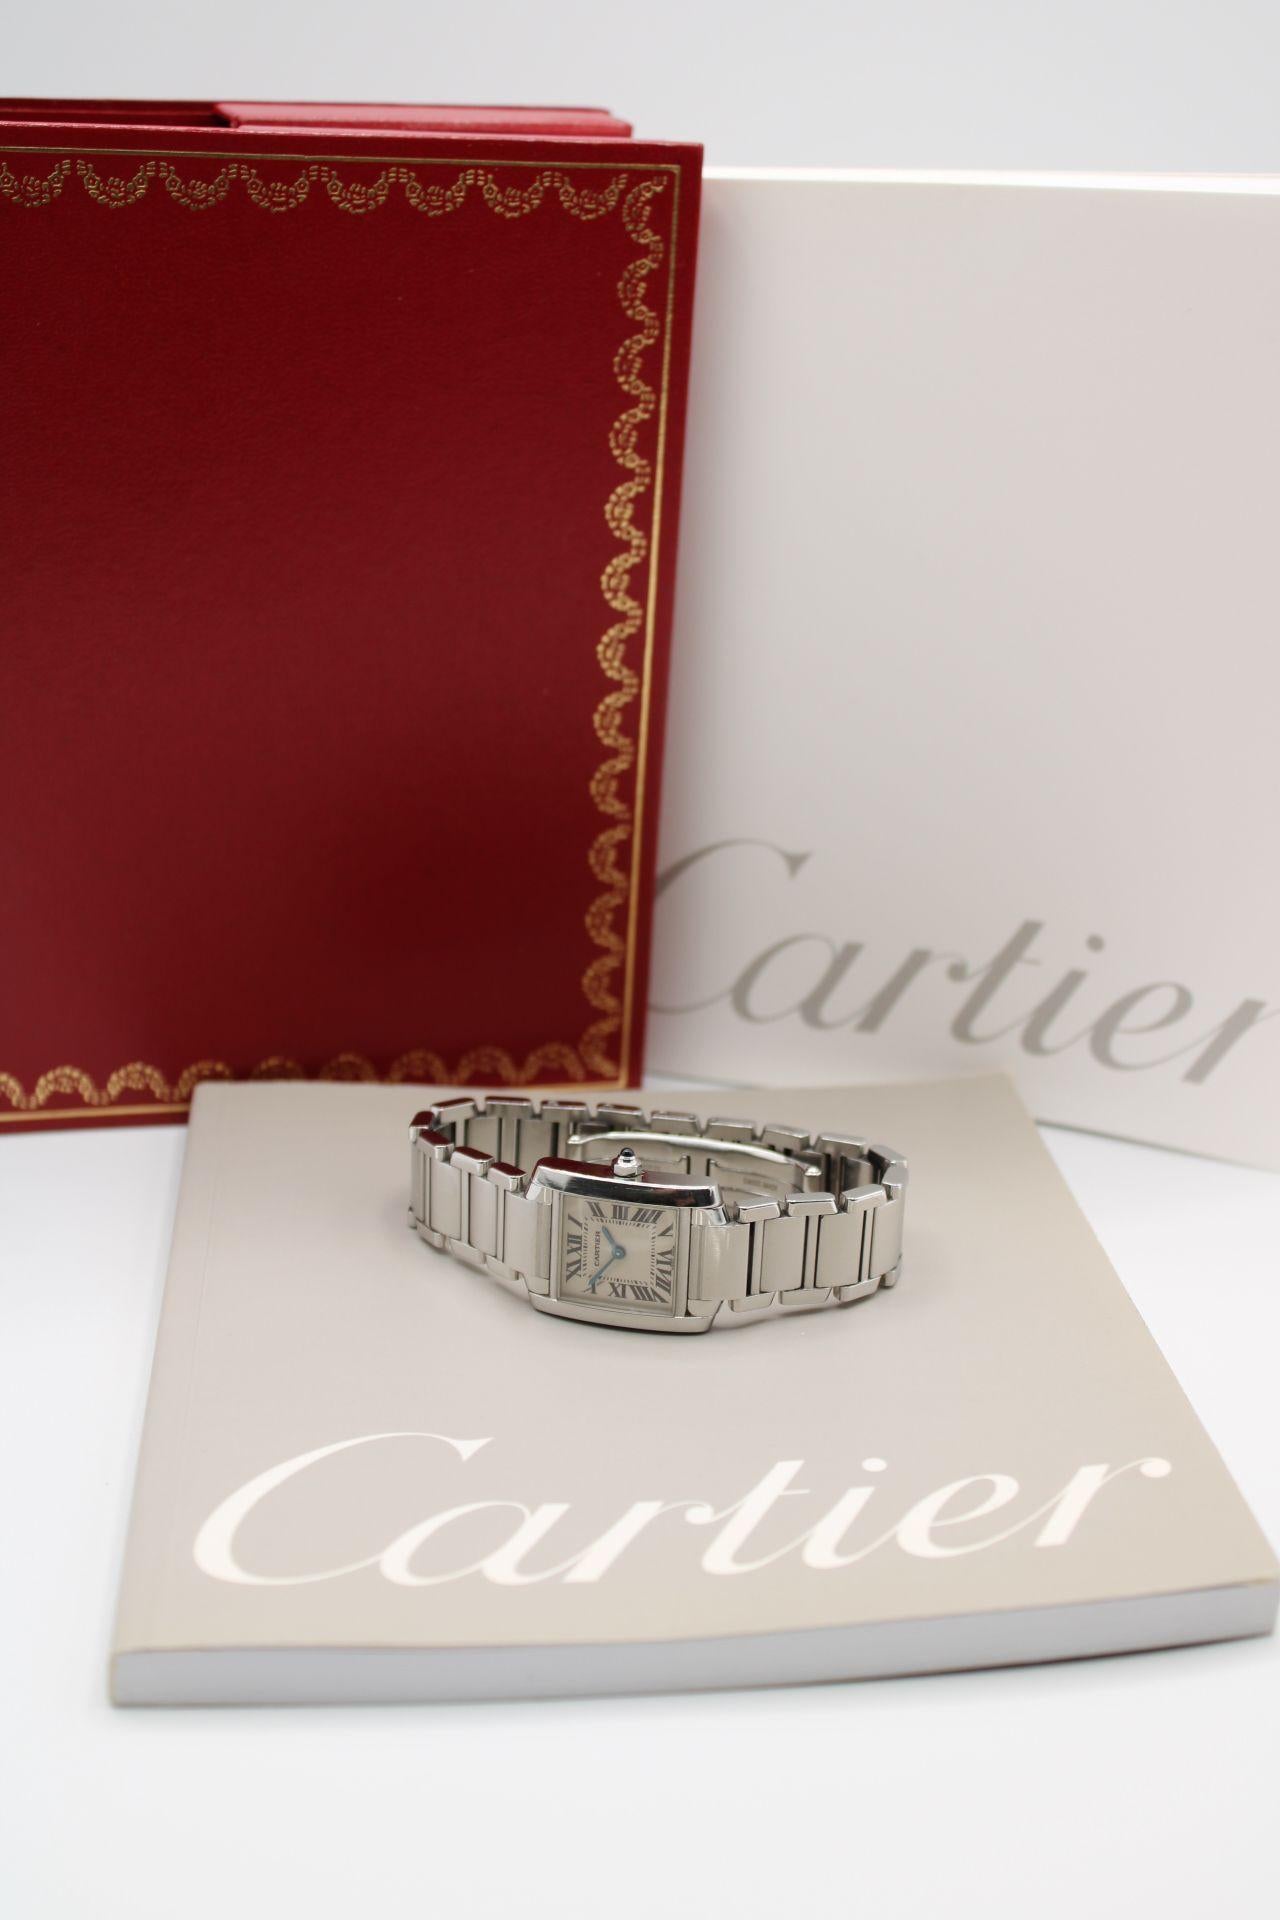  Cartier Tank Francaise 2384 Montre et papiers 2000 8